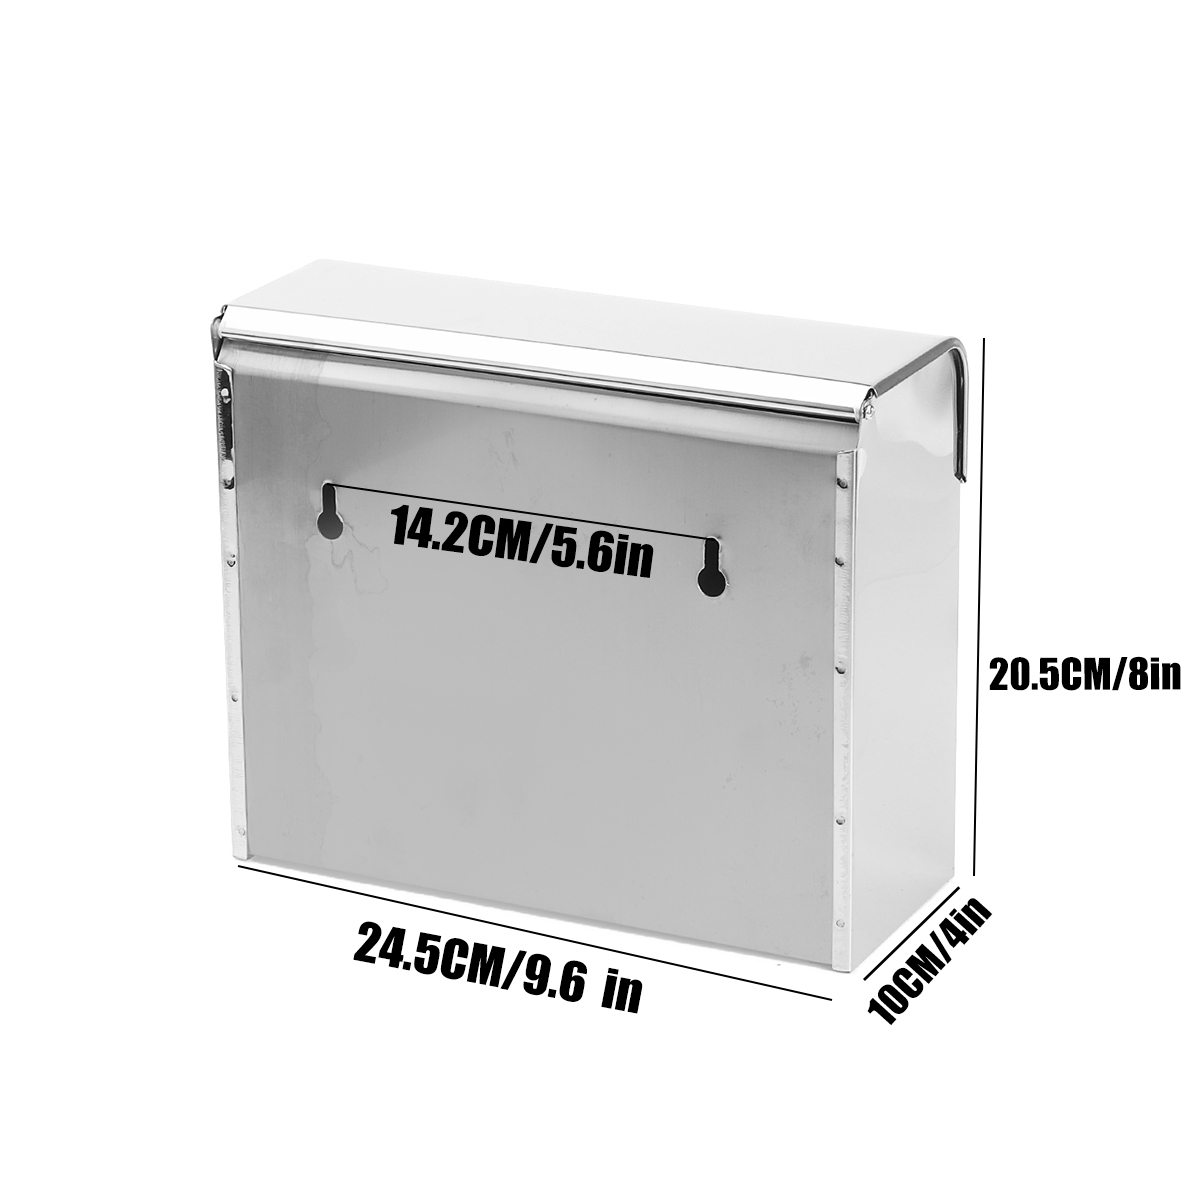 Stainless-Steel-Towel-Dispenser-Toilet-Paper-Holder-Kitchen-Bath-Shelf-Holder-1627018-4